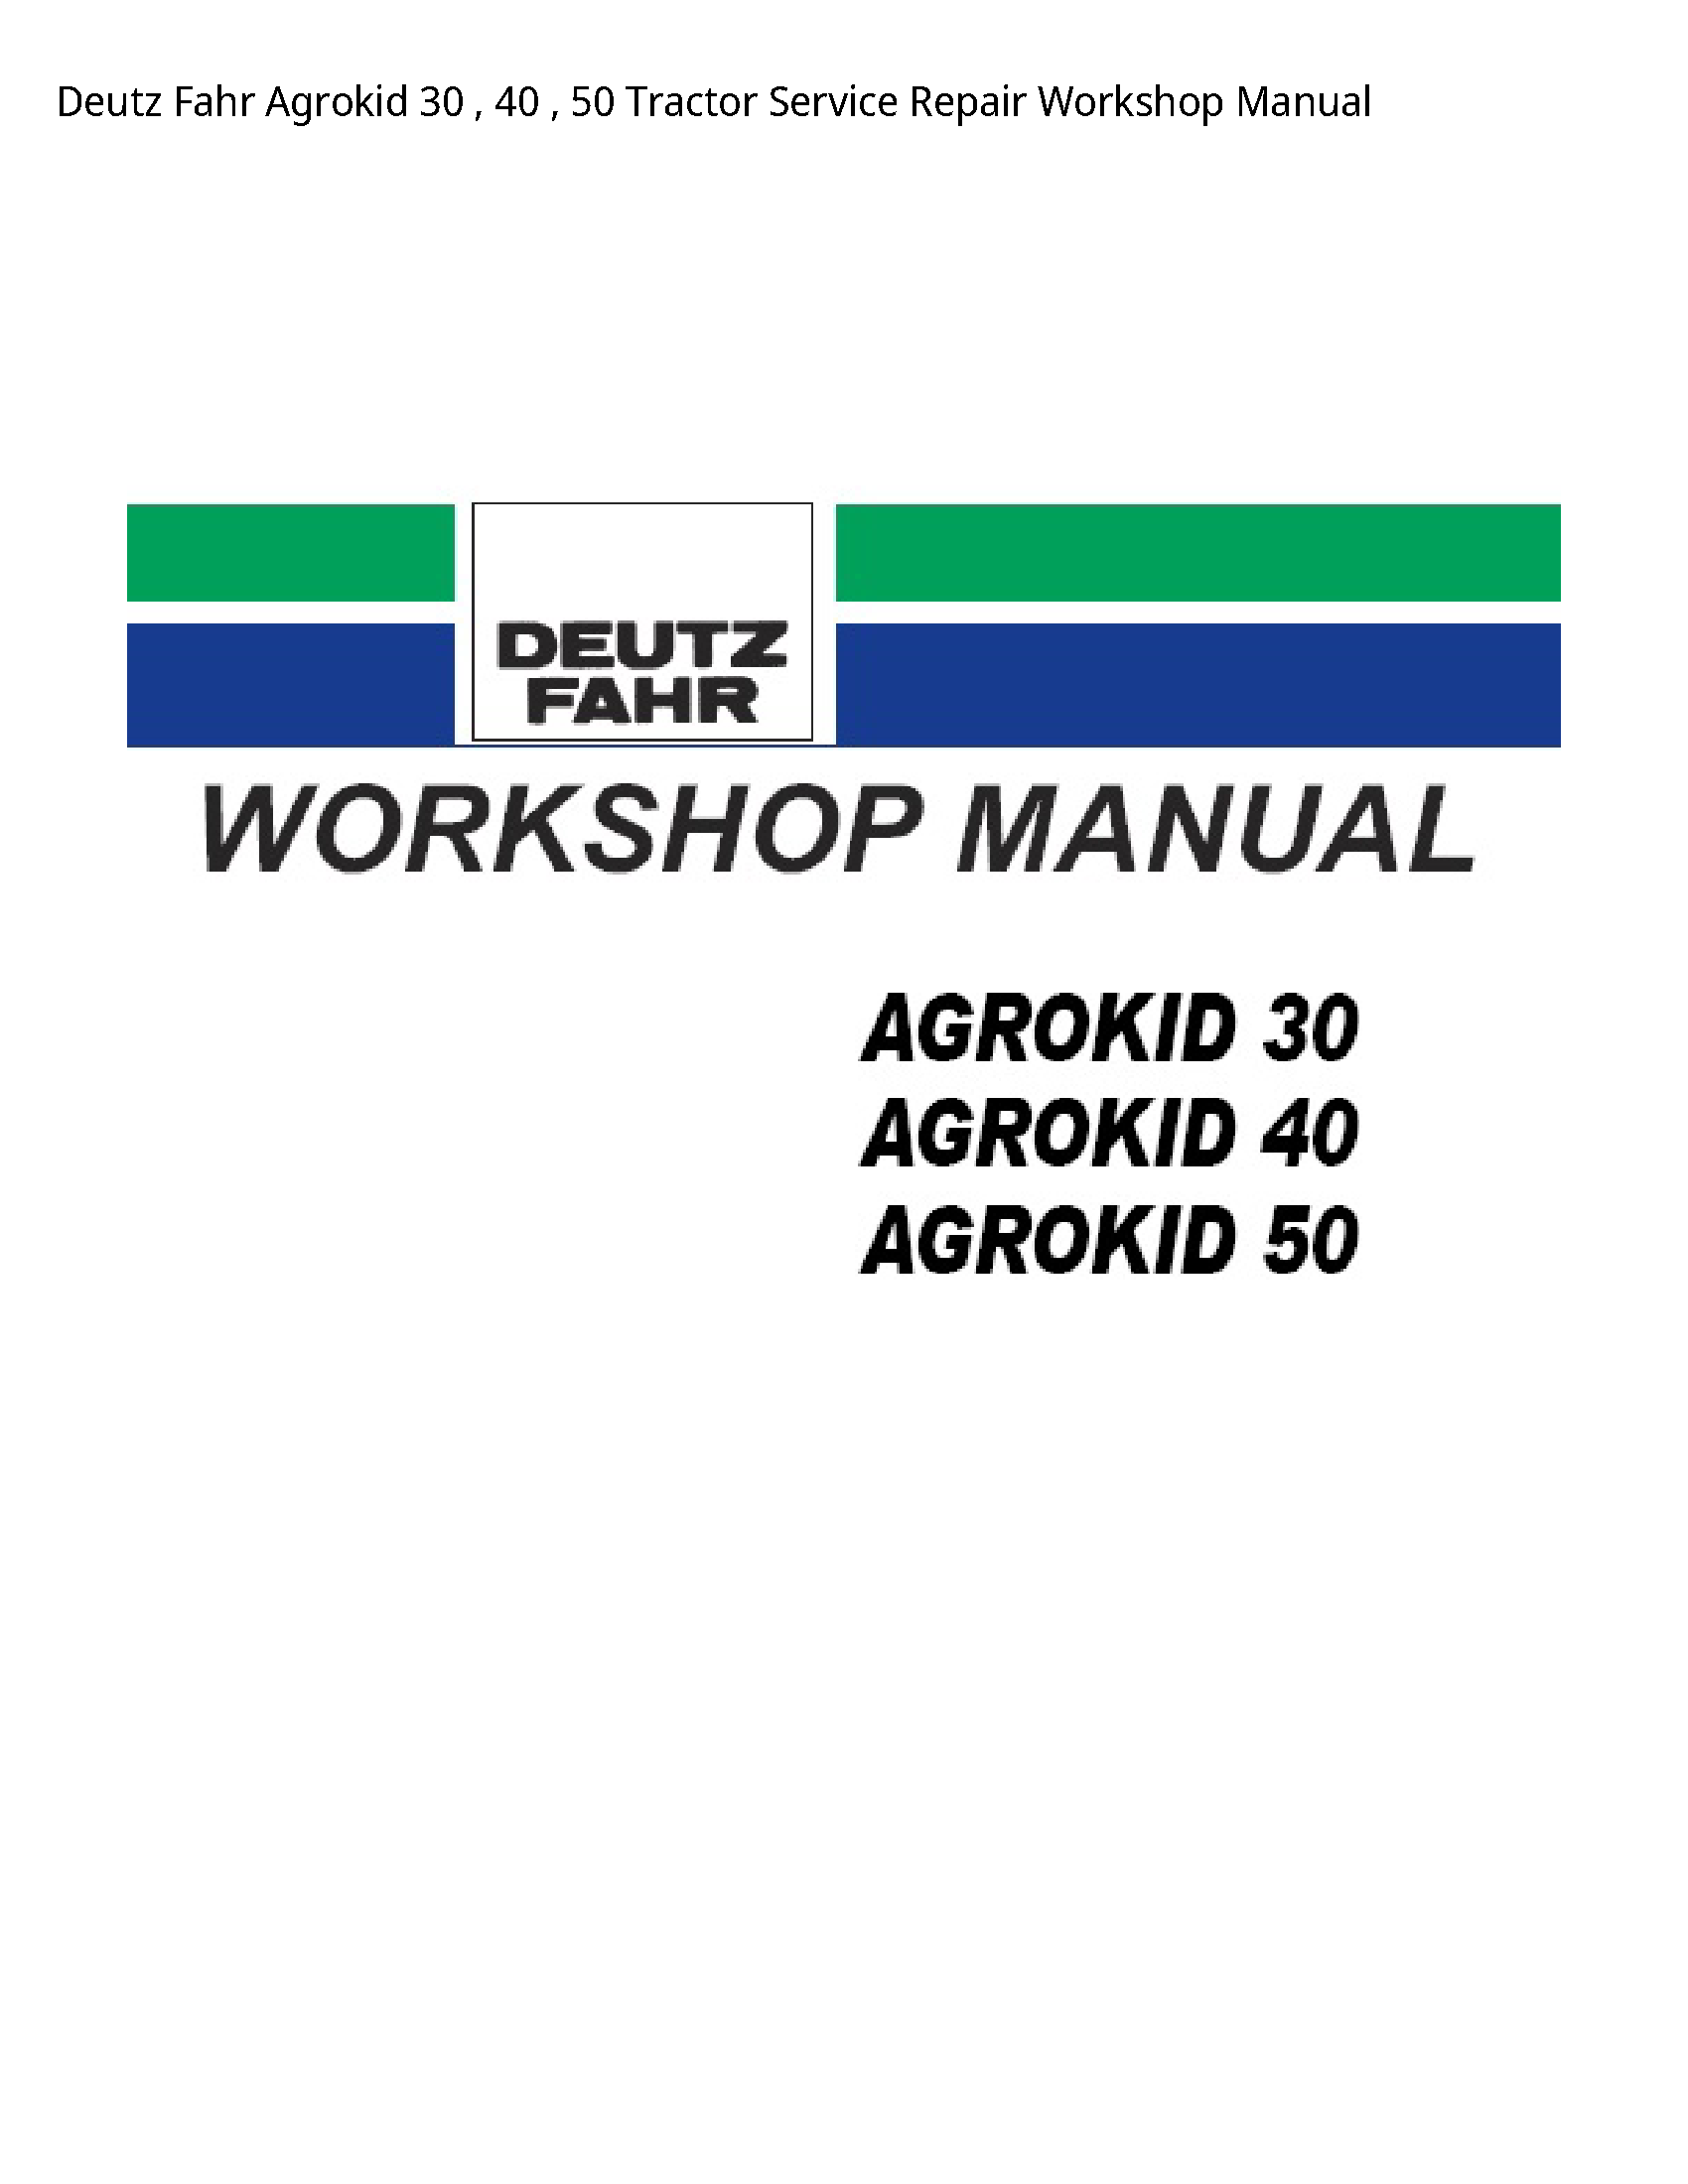 Deutz 30 Fahr Agrokid Tractor manual